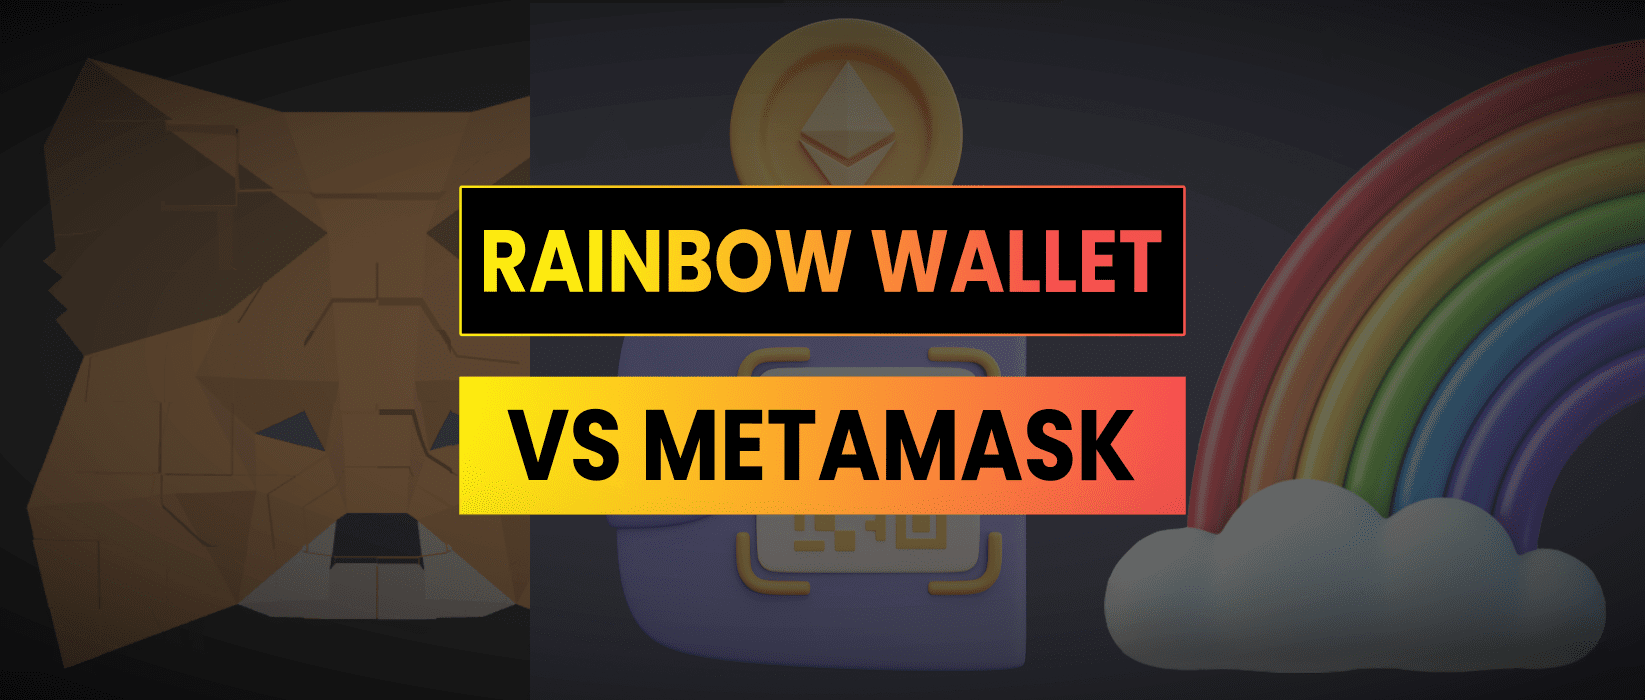 rainbow wallet vs metamask